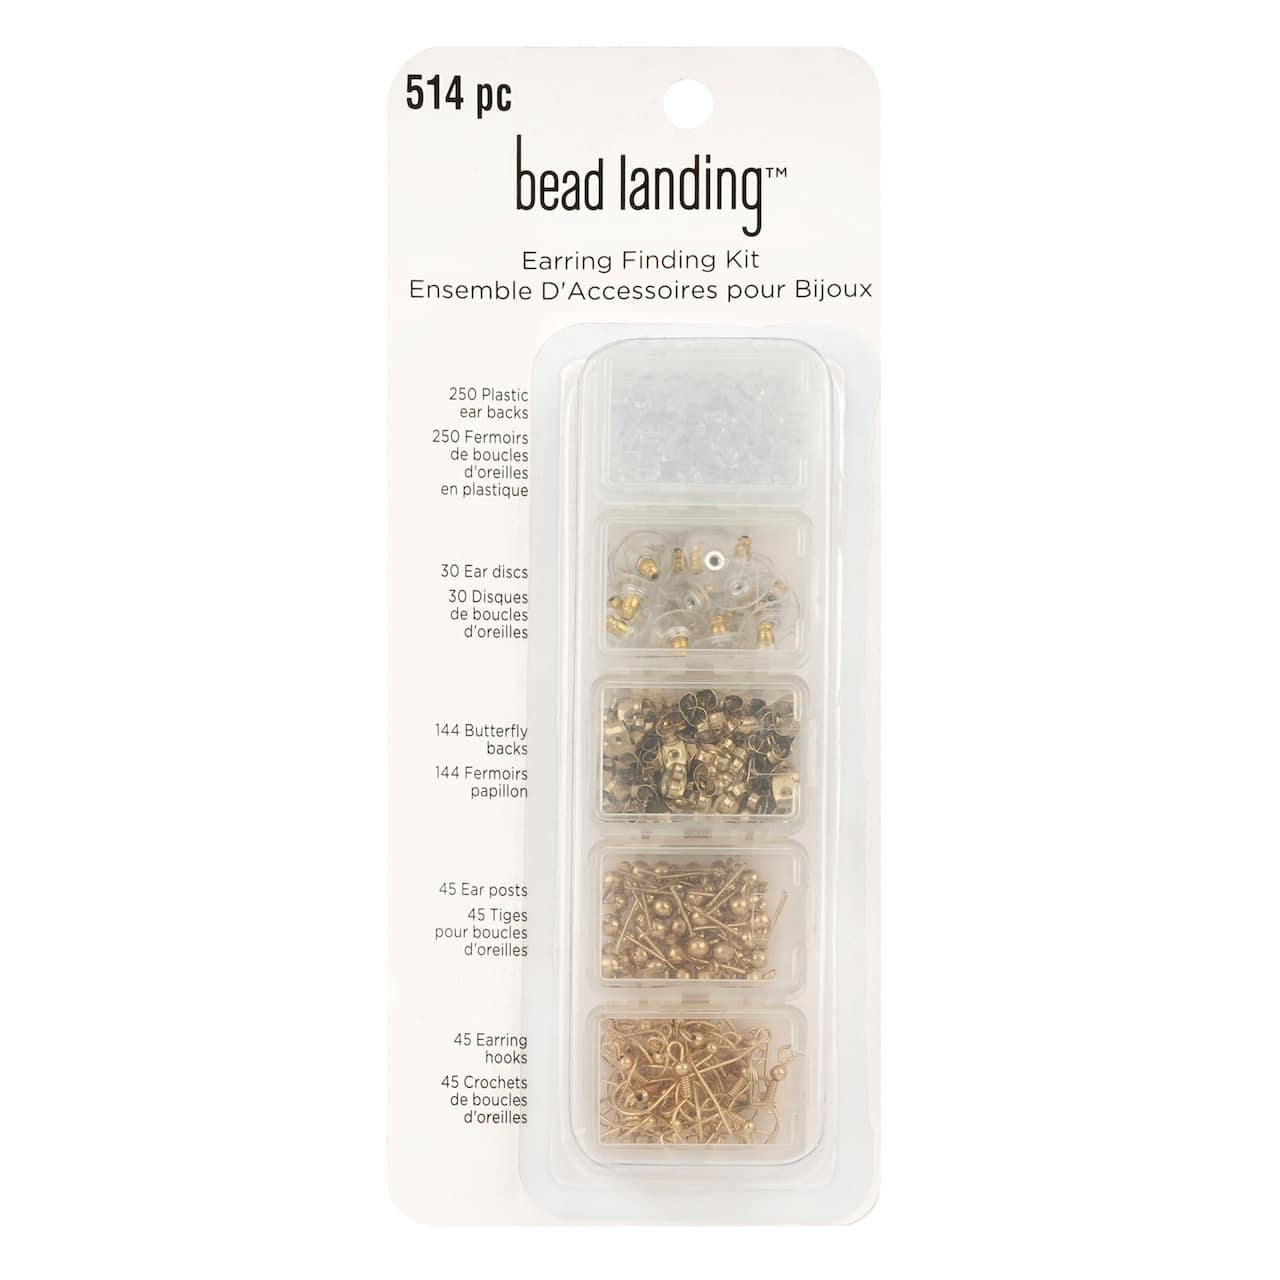 Earring Finding Kit by Bead Landing&#x2122;